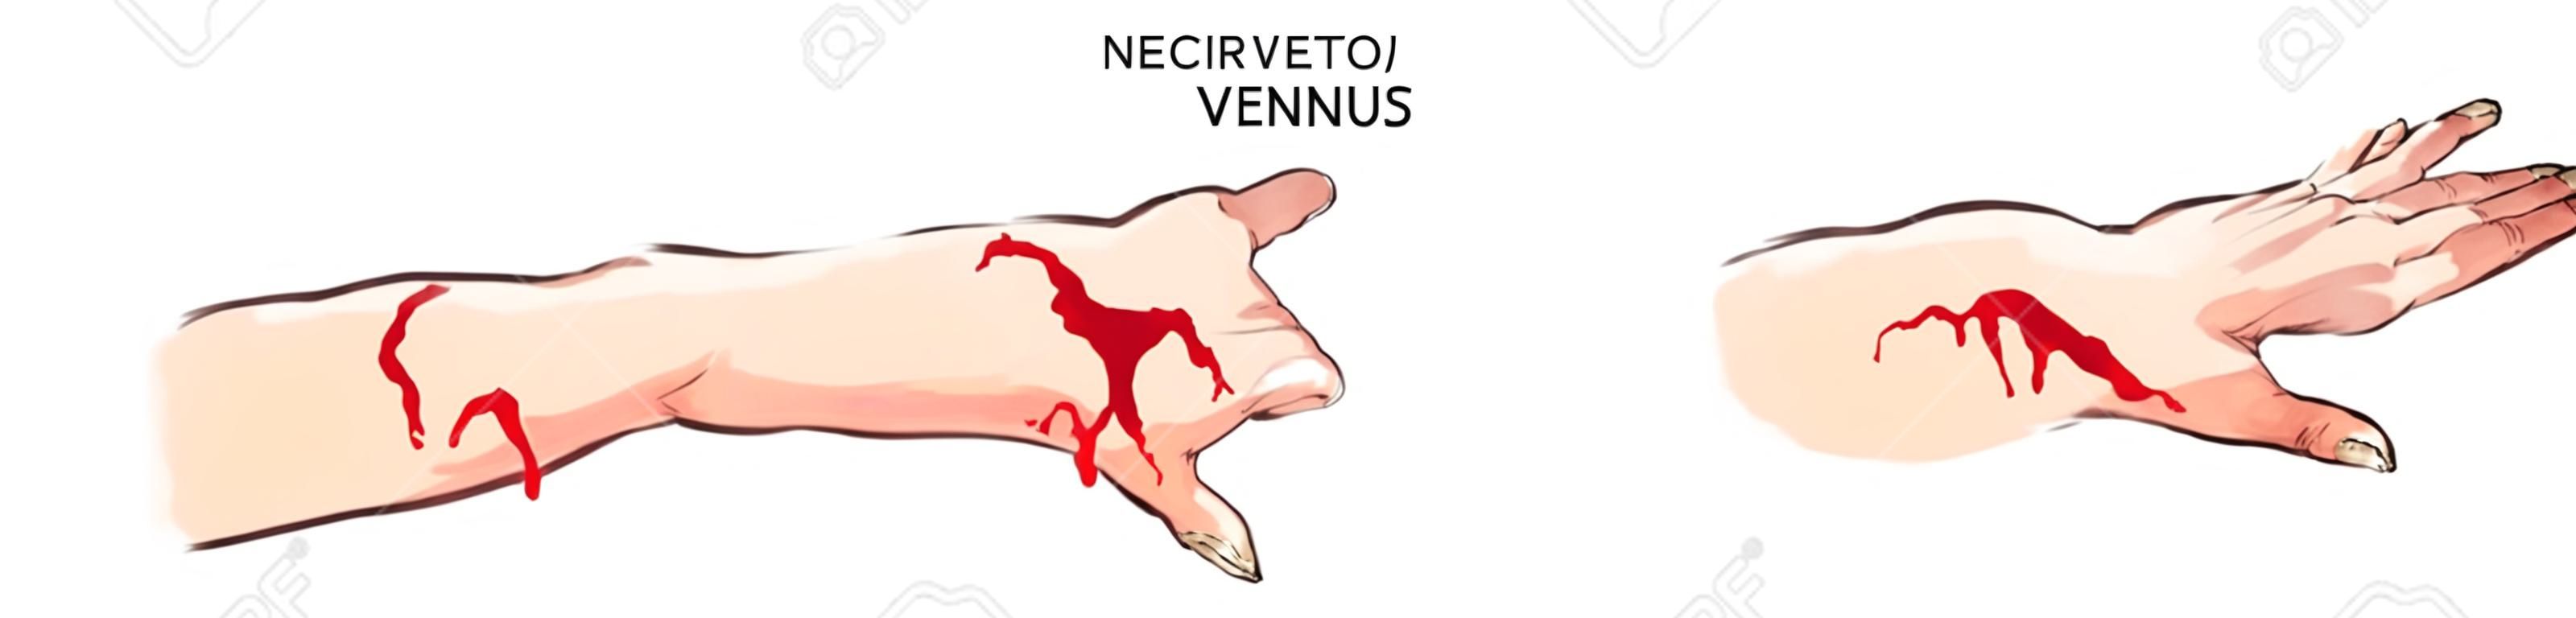 векторные иллюстрации артериальные и венозные кровотечения